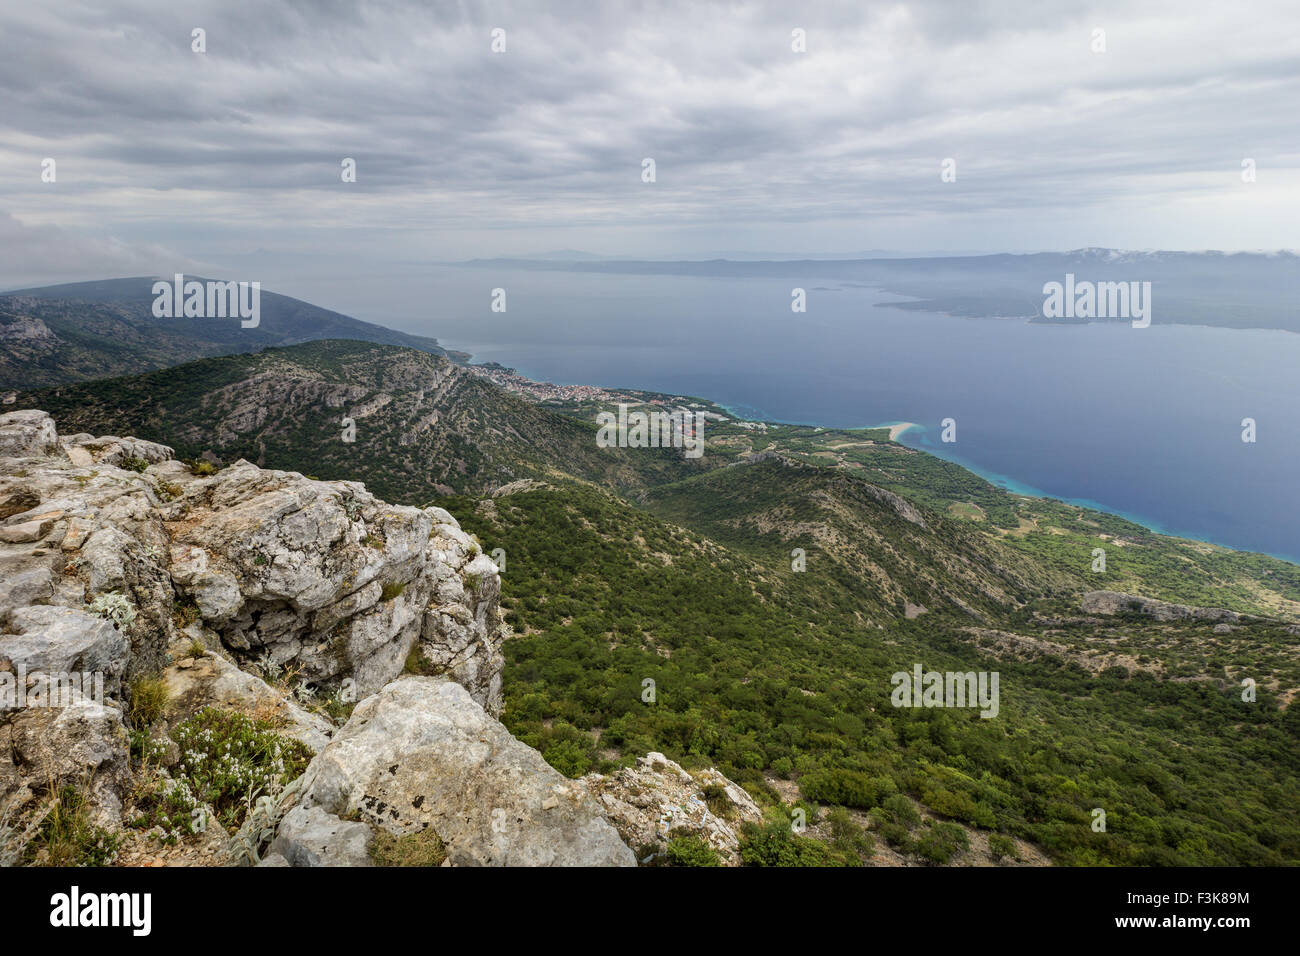 Vista panoramica dalla cima di Vidova Gora Mountain verso Bol e la spiaggia Zlatni Rat presso l'isola di Brac in Croazia. Foto Stock